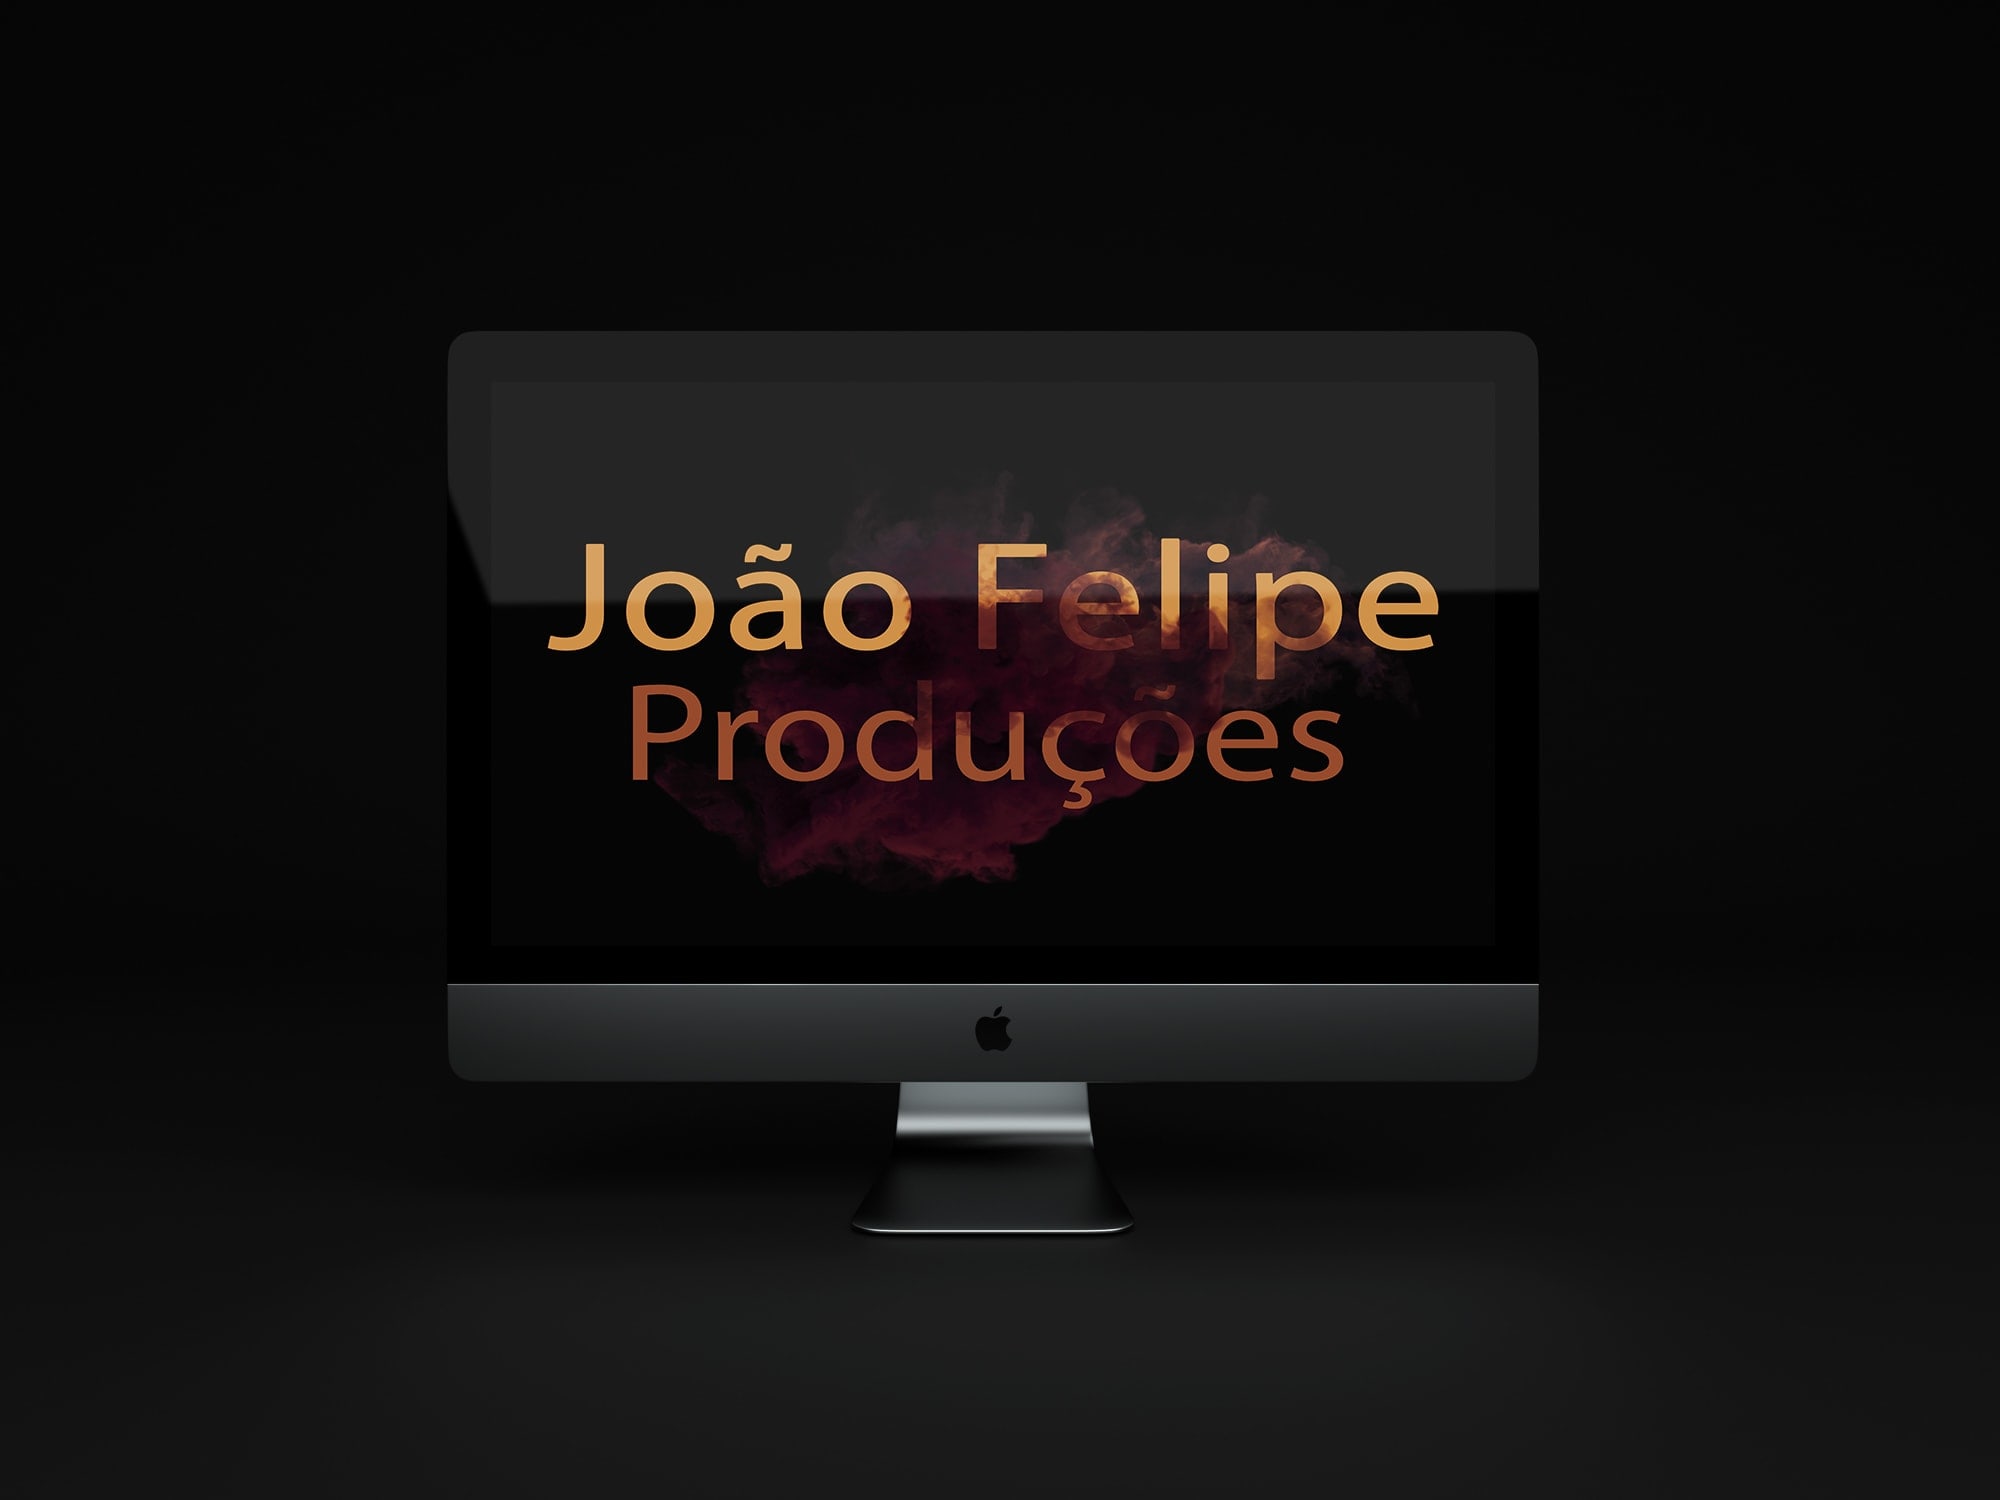 João Felipe Produções